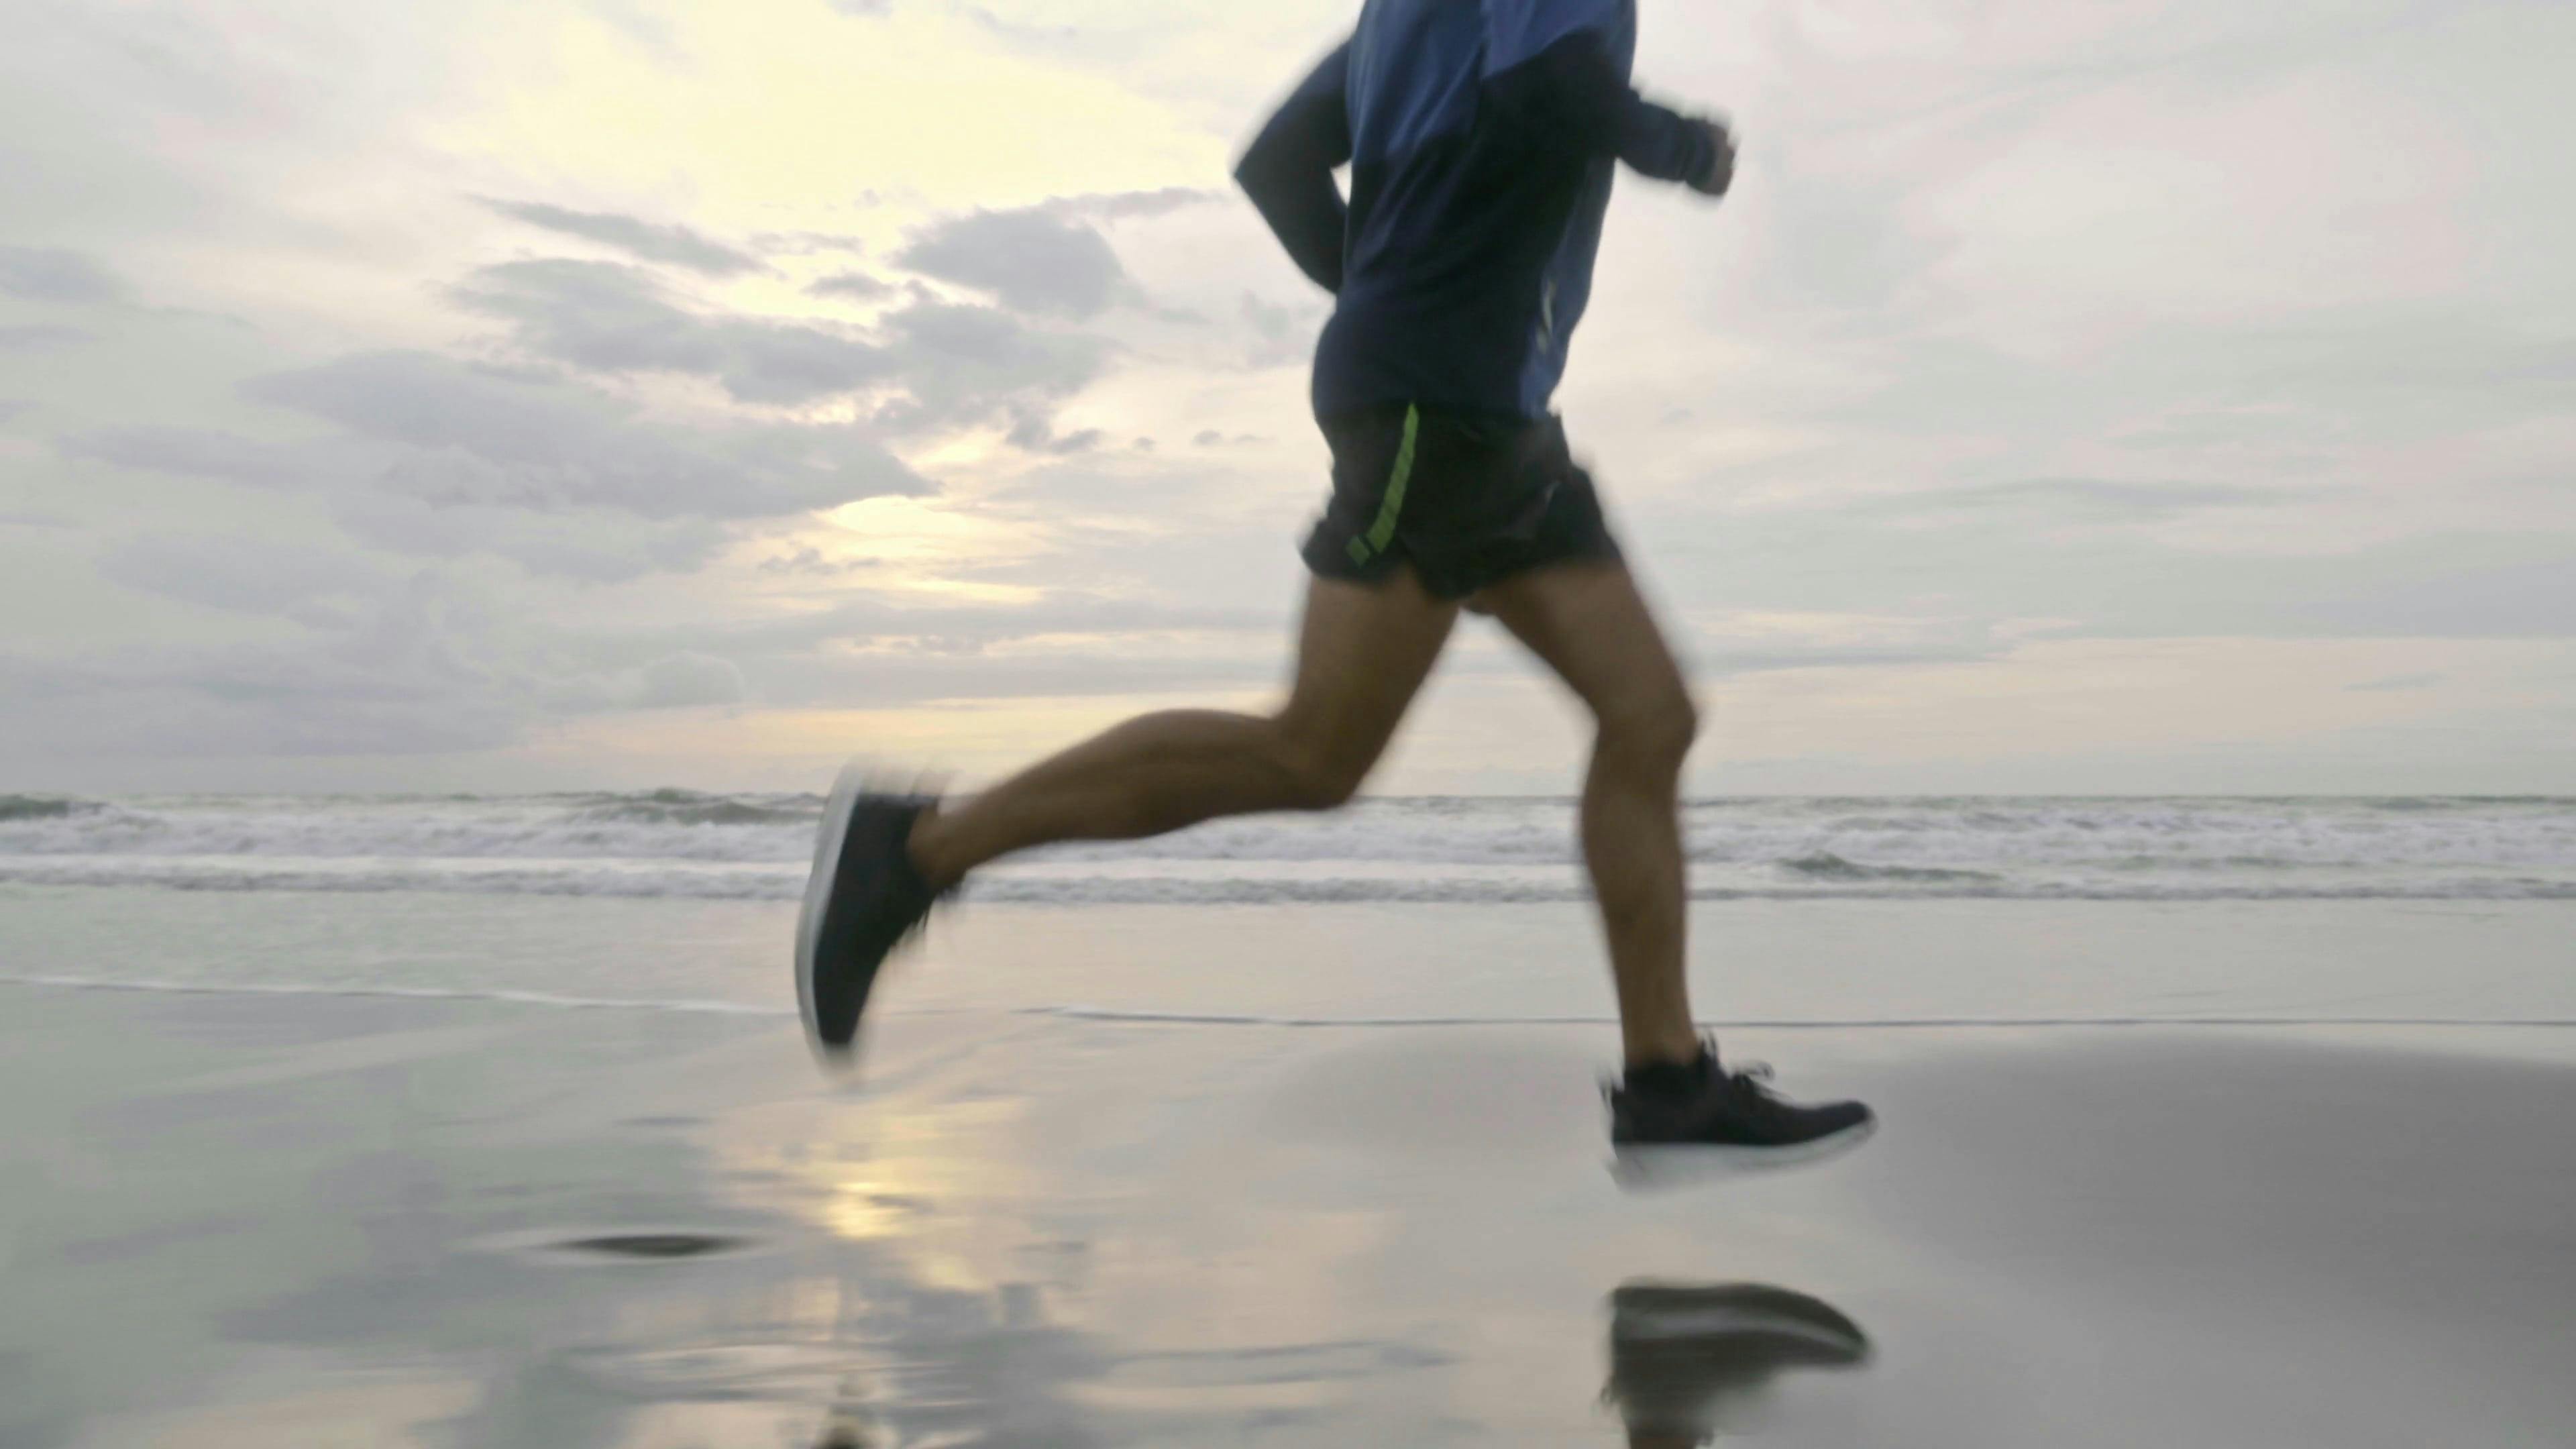 图片素材 : 海滩, 地平线, 轮廓, 日落, 早上, 赛跑, 男, 跑步, 转轮, 健康, 健身, 竞争, 适合, 耐力, 运动员, 慢跑 ...